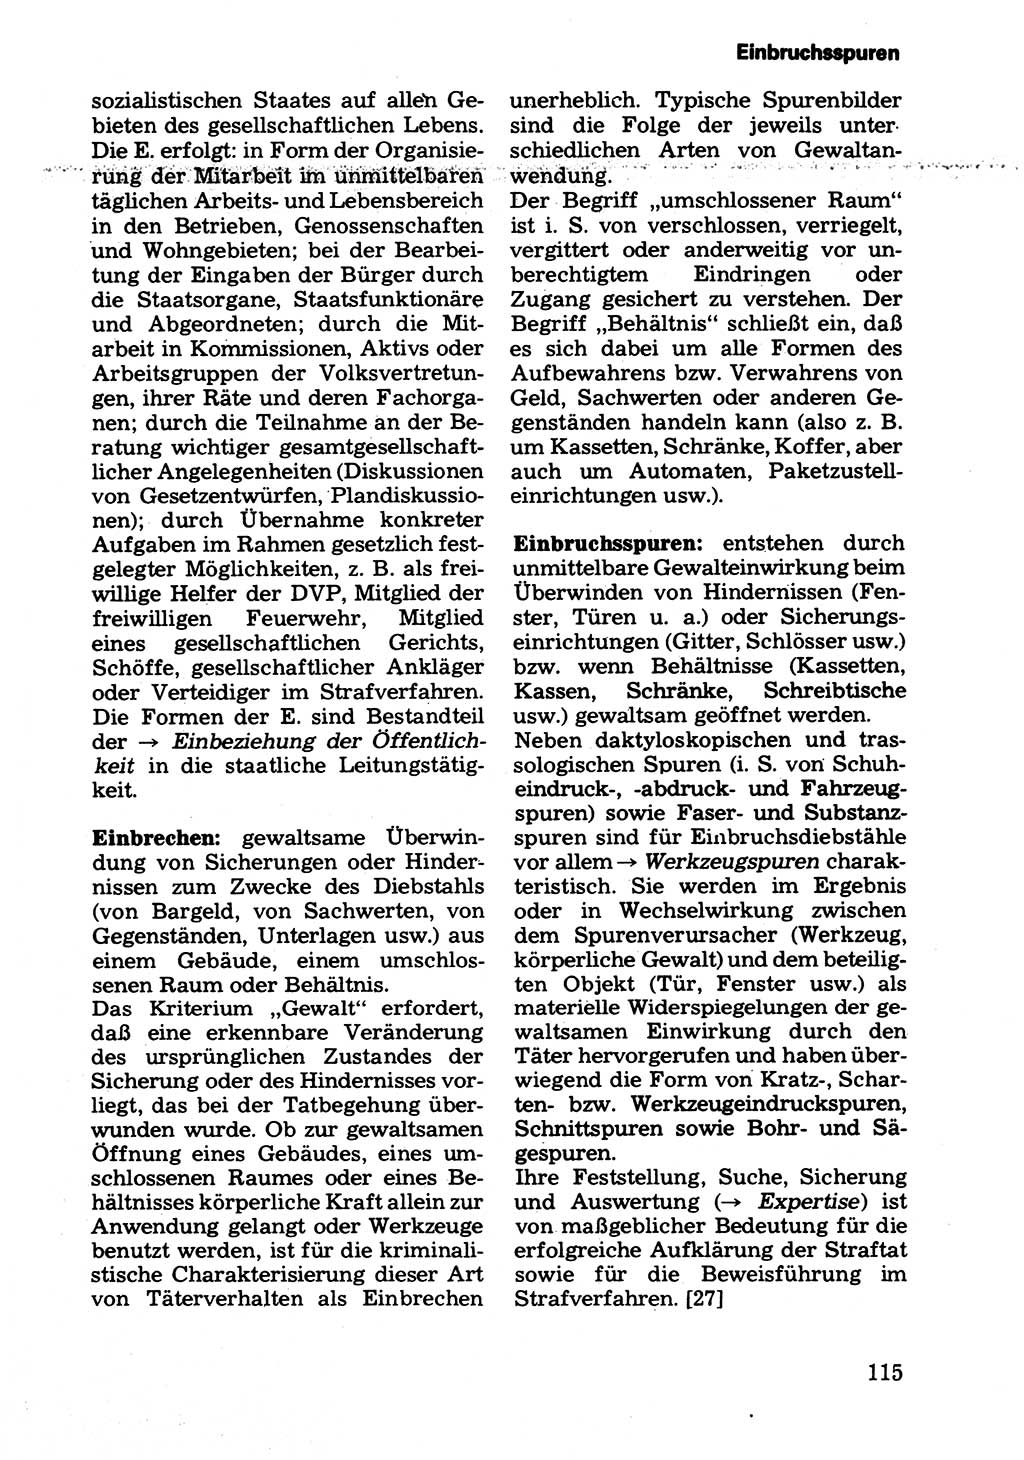 Wörterbuch der sozialistischen Kriminalistik [Deutsche Demokratische Republik (DDR)] 1981, Seite 115 (Wb. soz. Krim. DDR 1981, S. 115)